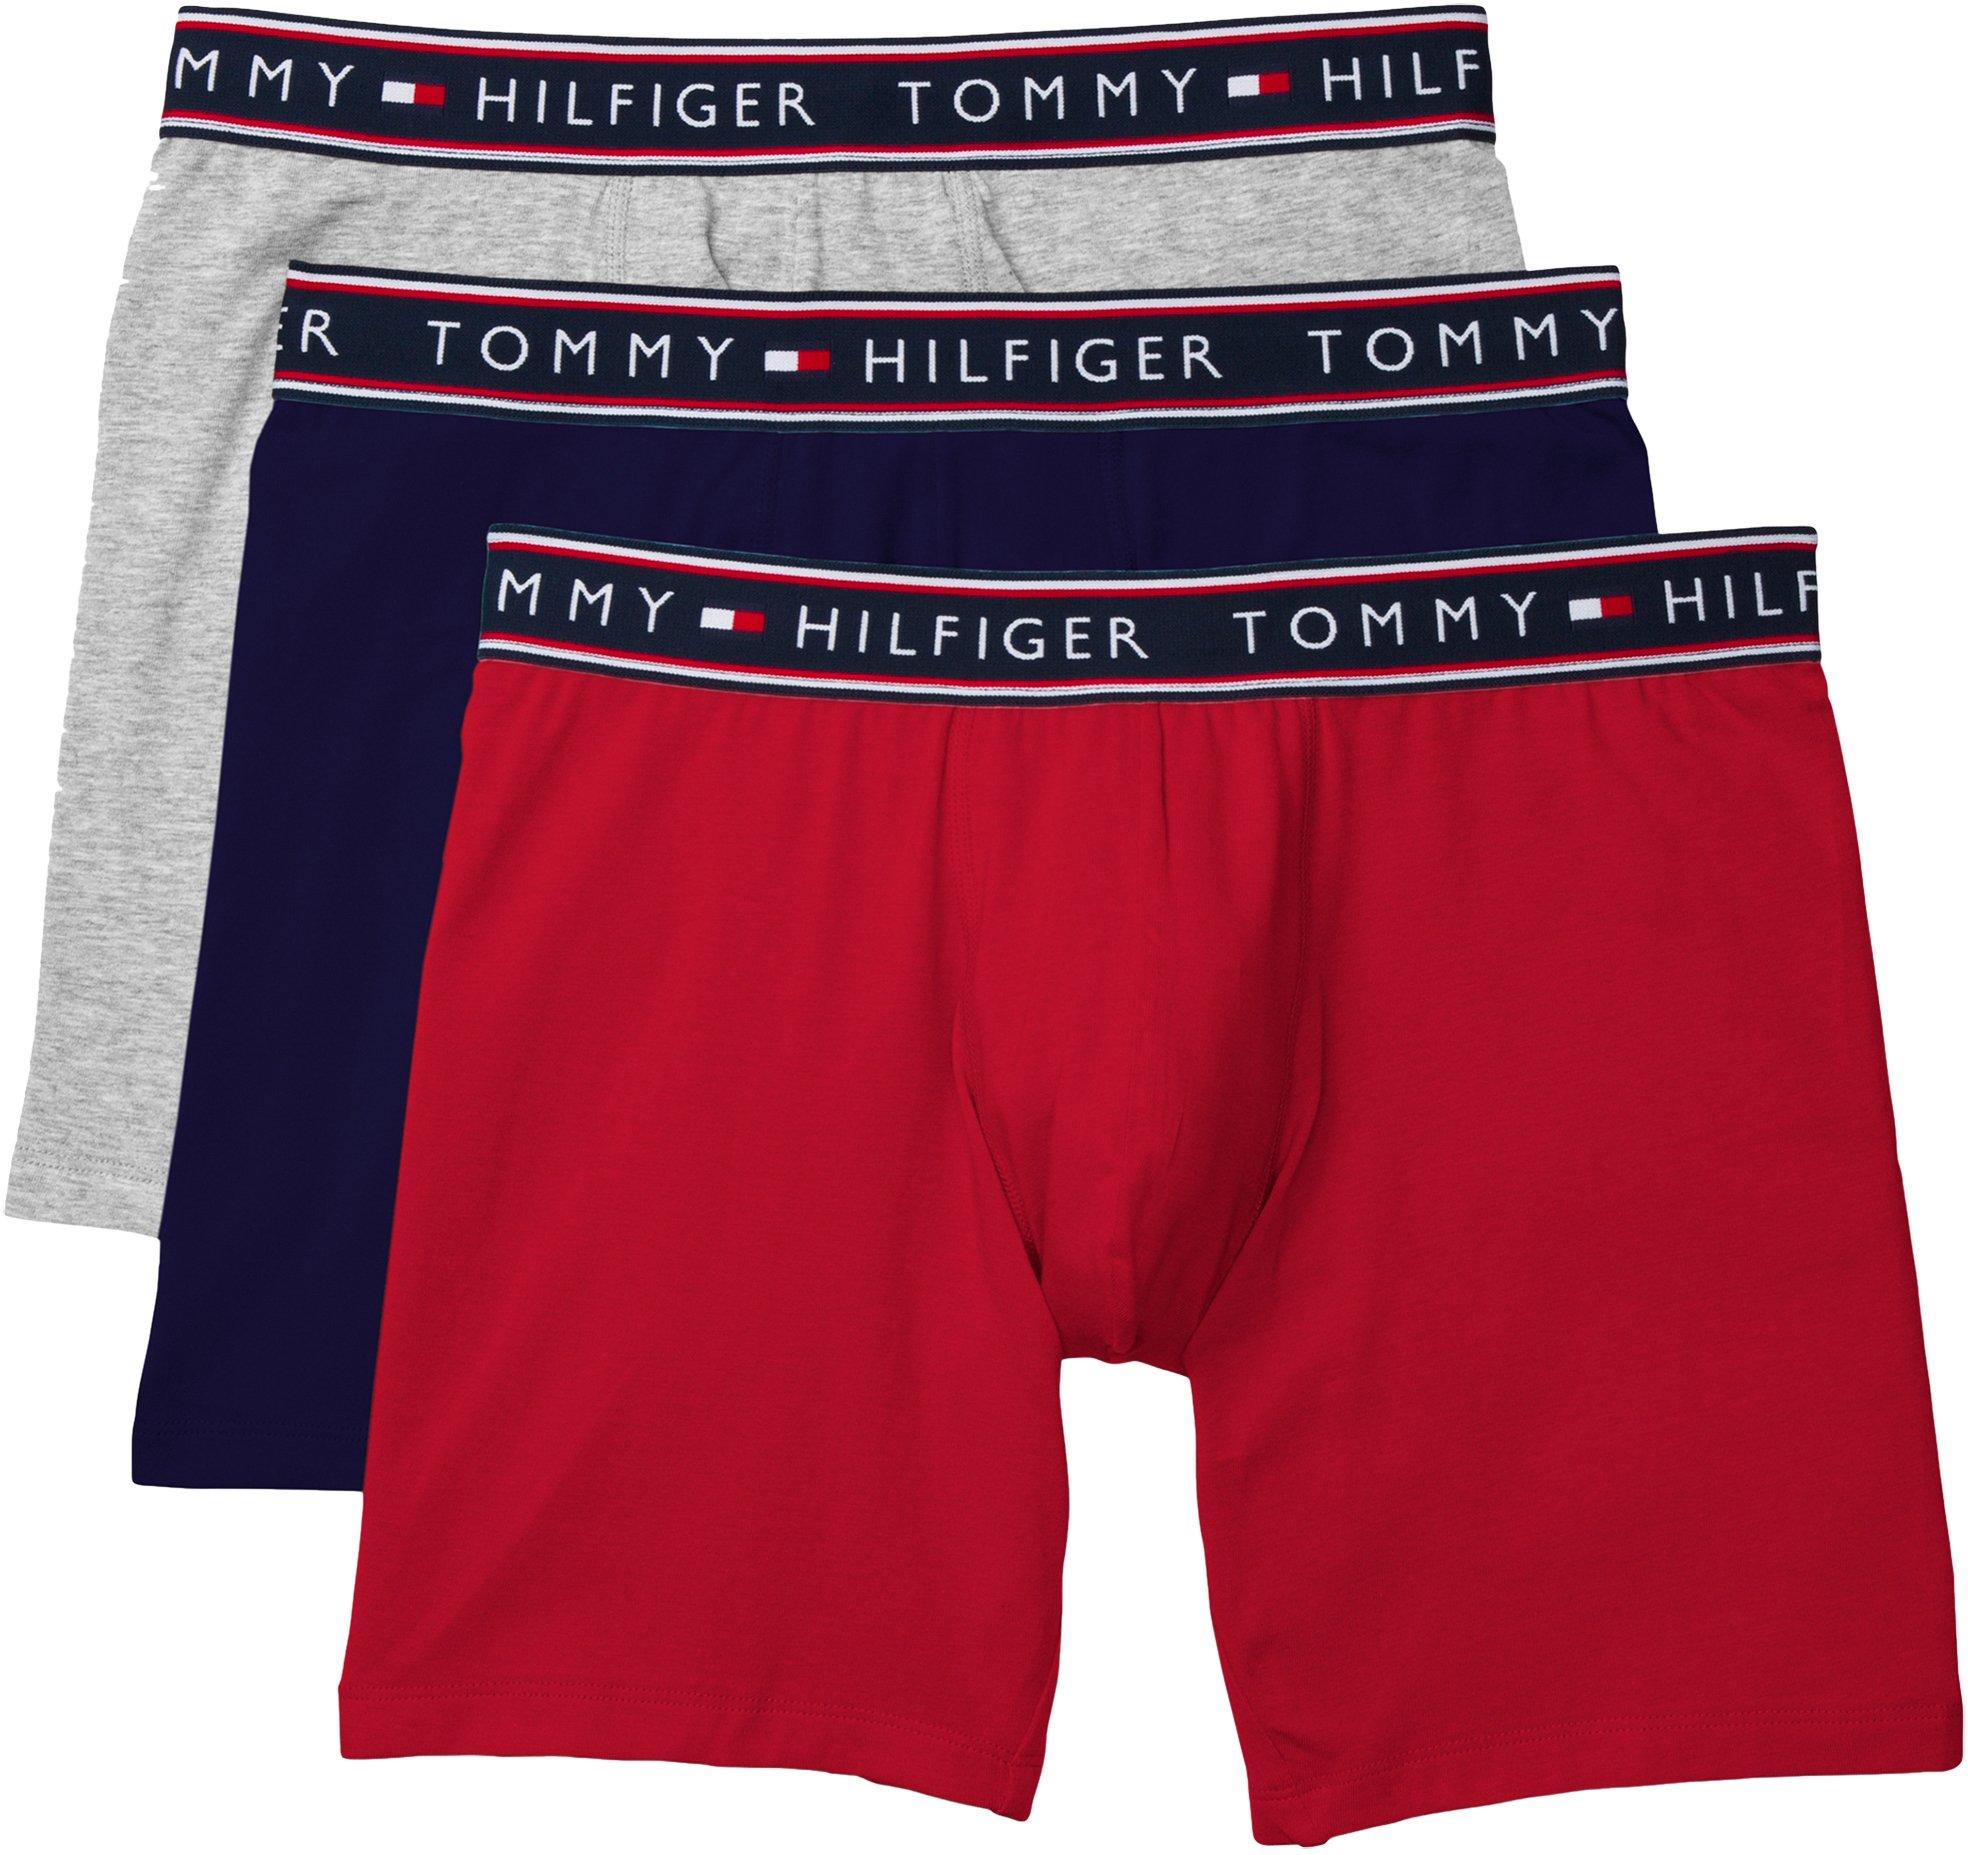 tommy hilfiger boxer brief underwear